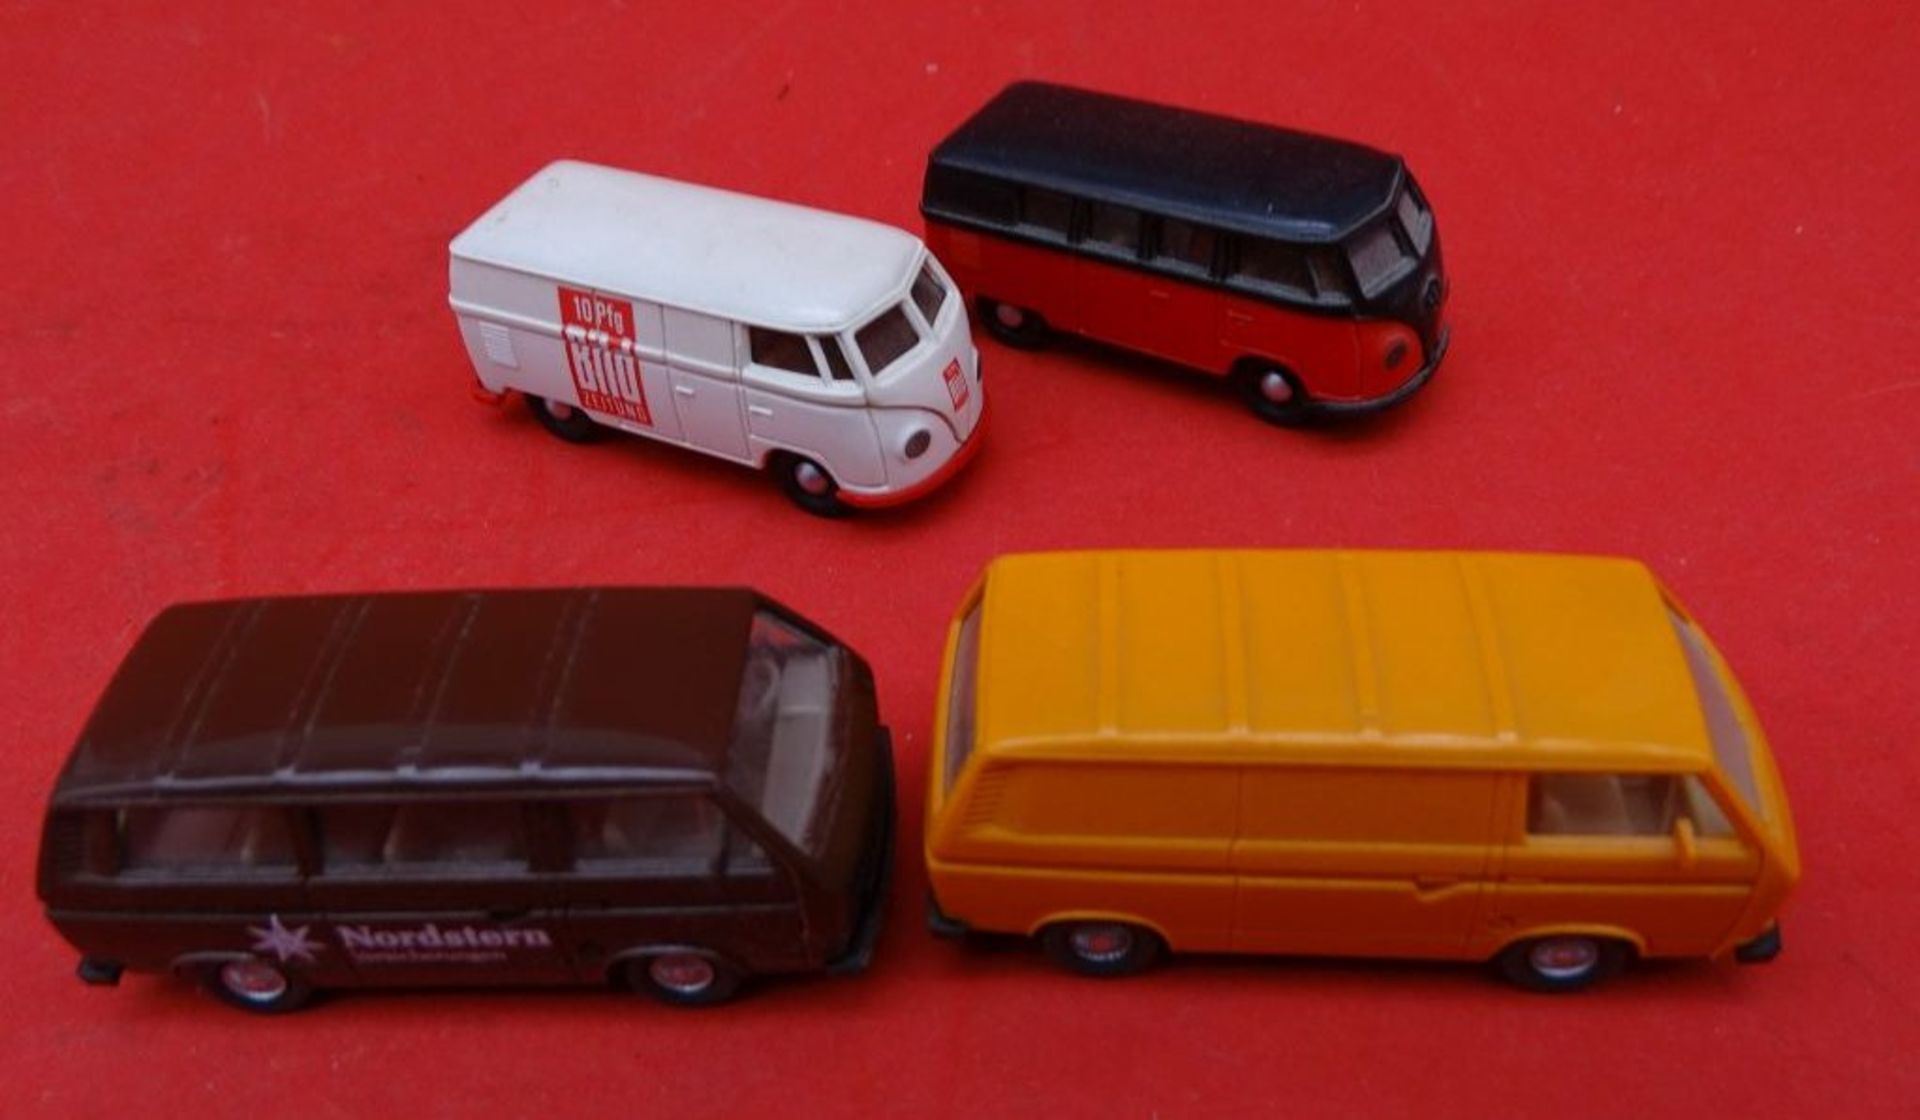 4 VW Bus-Modelle von "Wiking" - Image 2 of 3